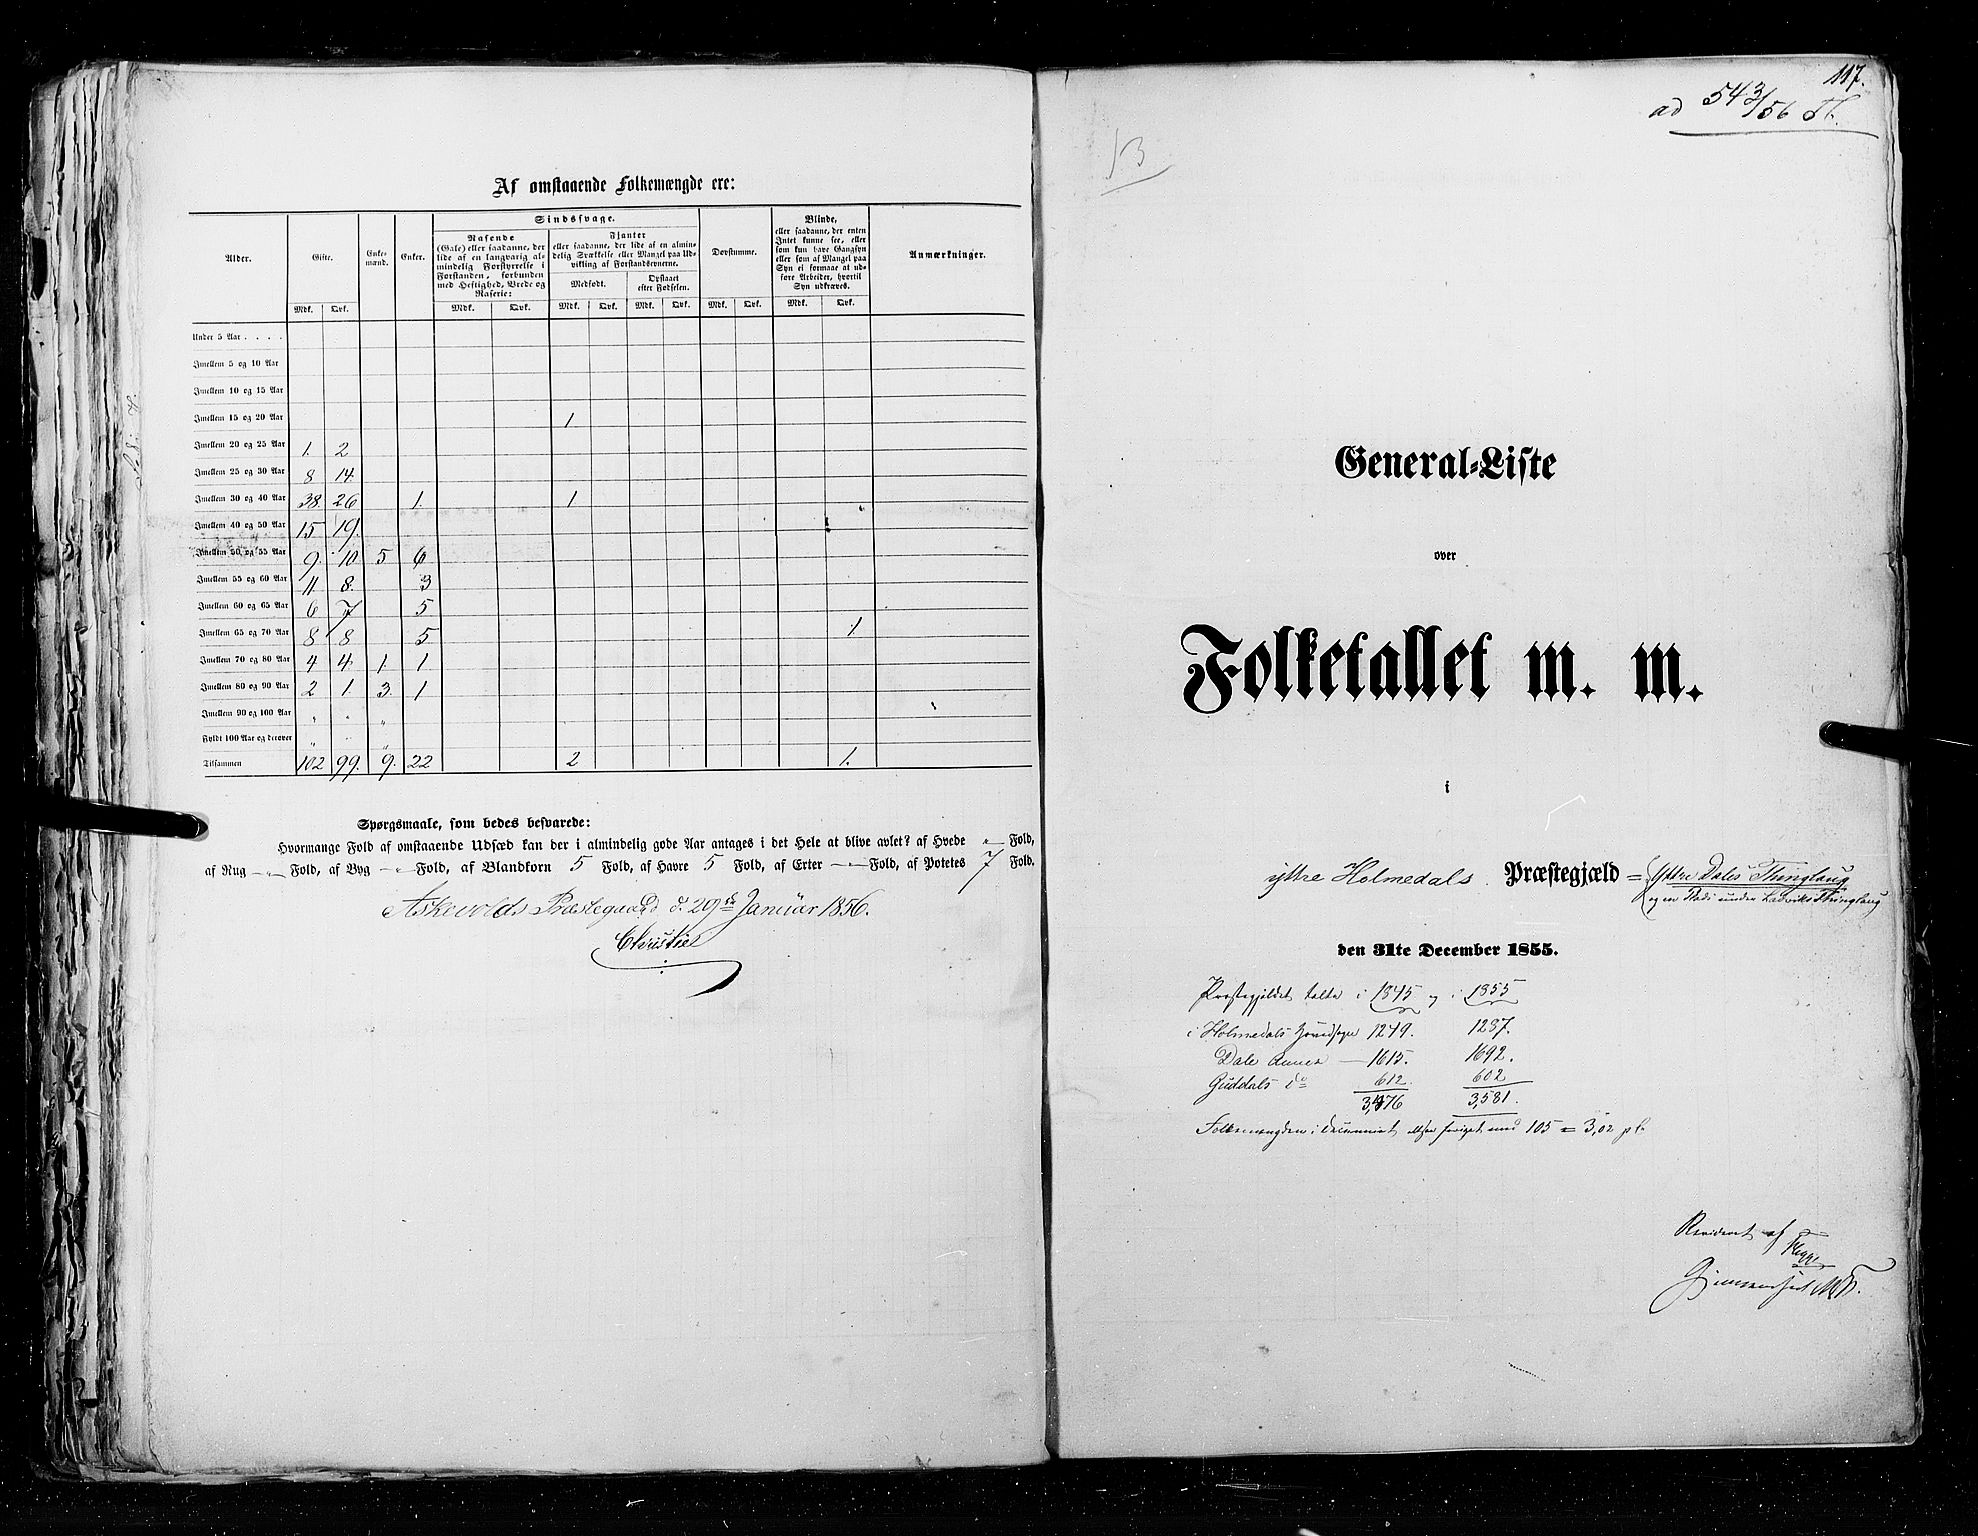 RA, Folketellingen 1855, bind 5: Nordre Bergenhus amt, Romsdal amt og Søndre Trondhjem amt, 1855, s. 117